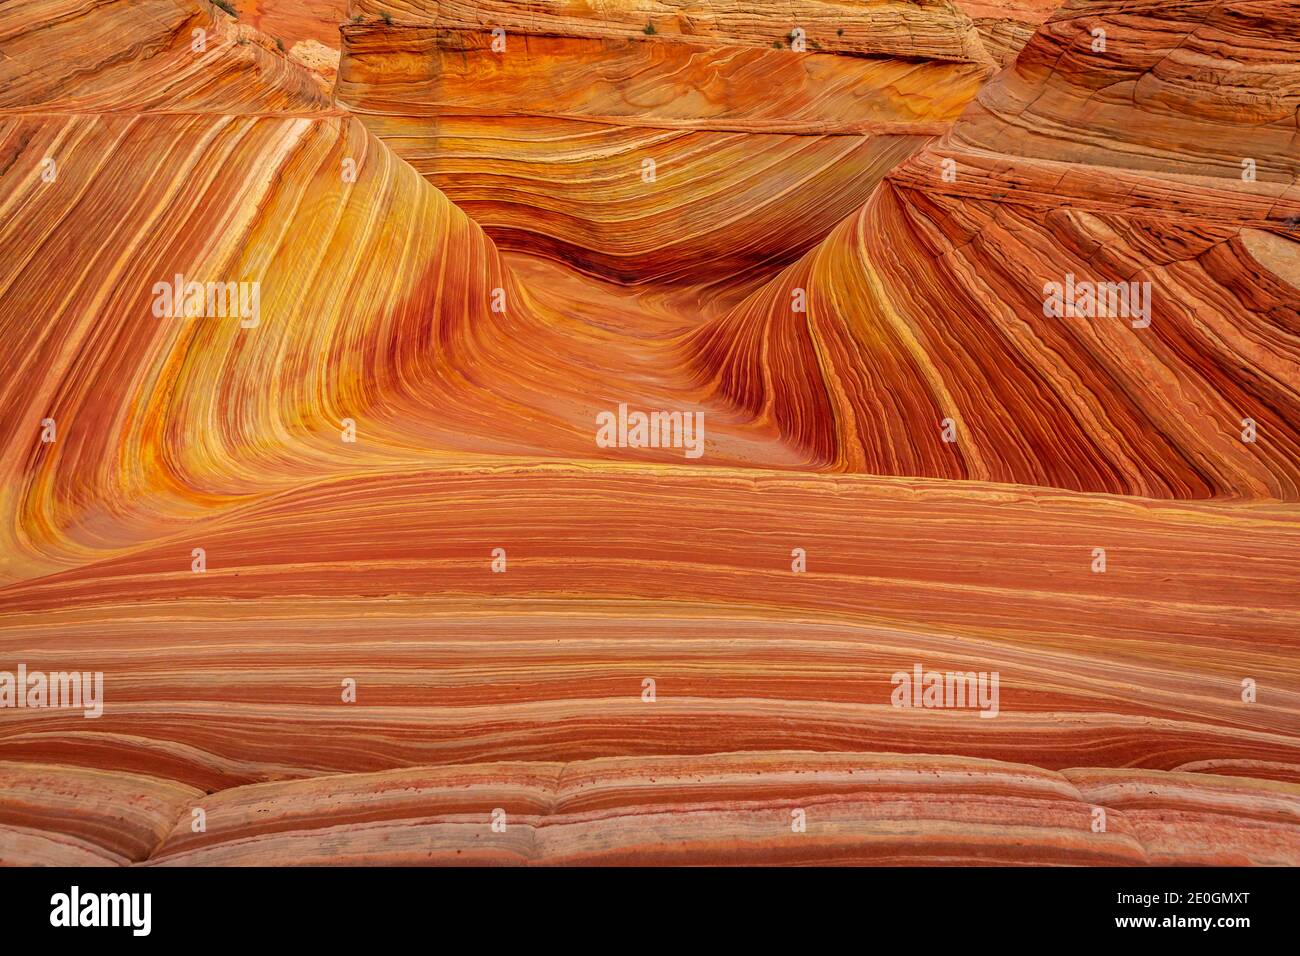 The Wave est une célèbre formation de roche de grès située à Coyote Buttes, en Arizona, connue pour ses formes ondulantes colorées Banque D'Images